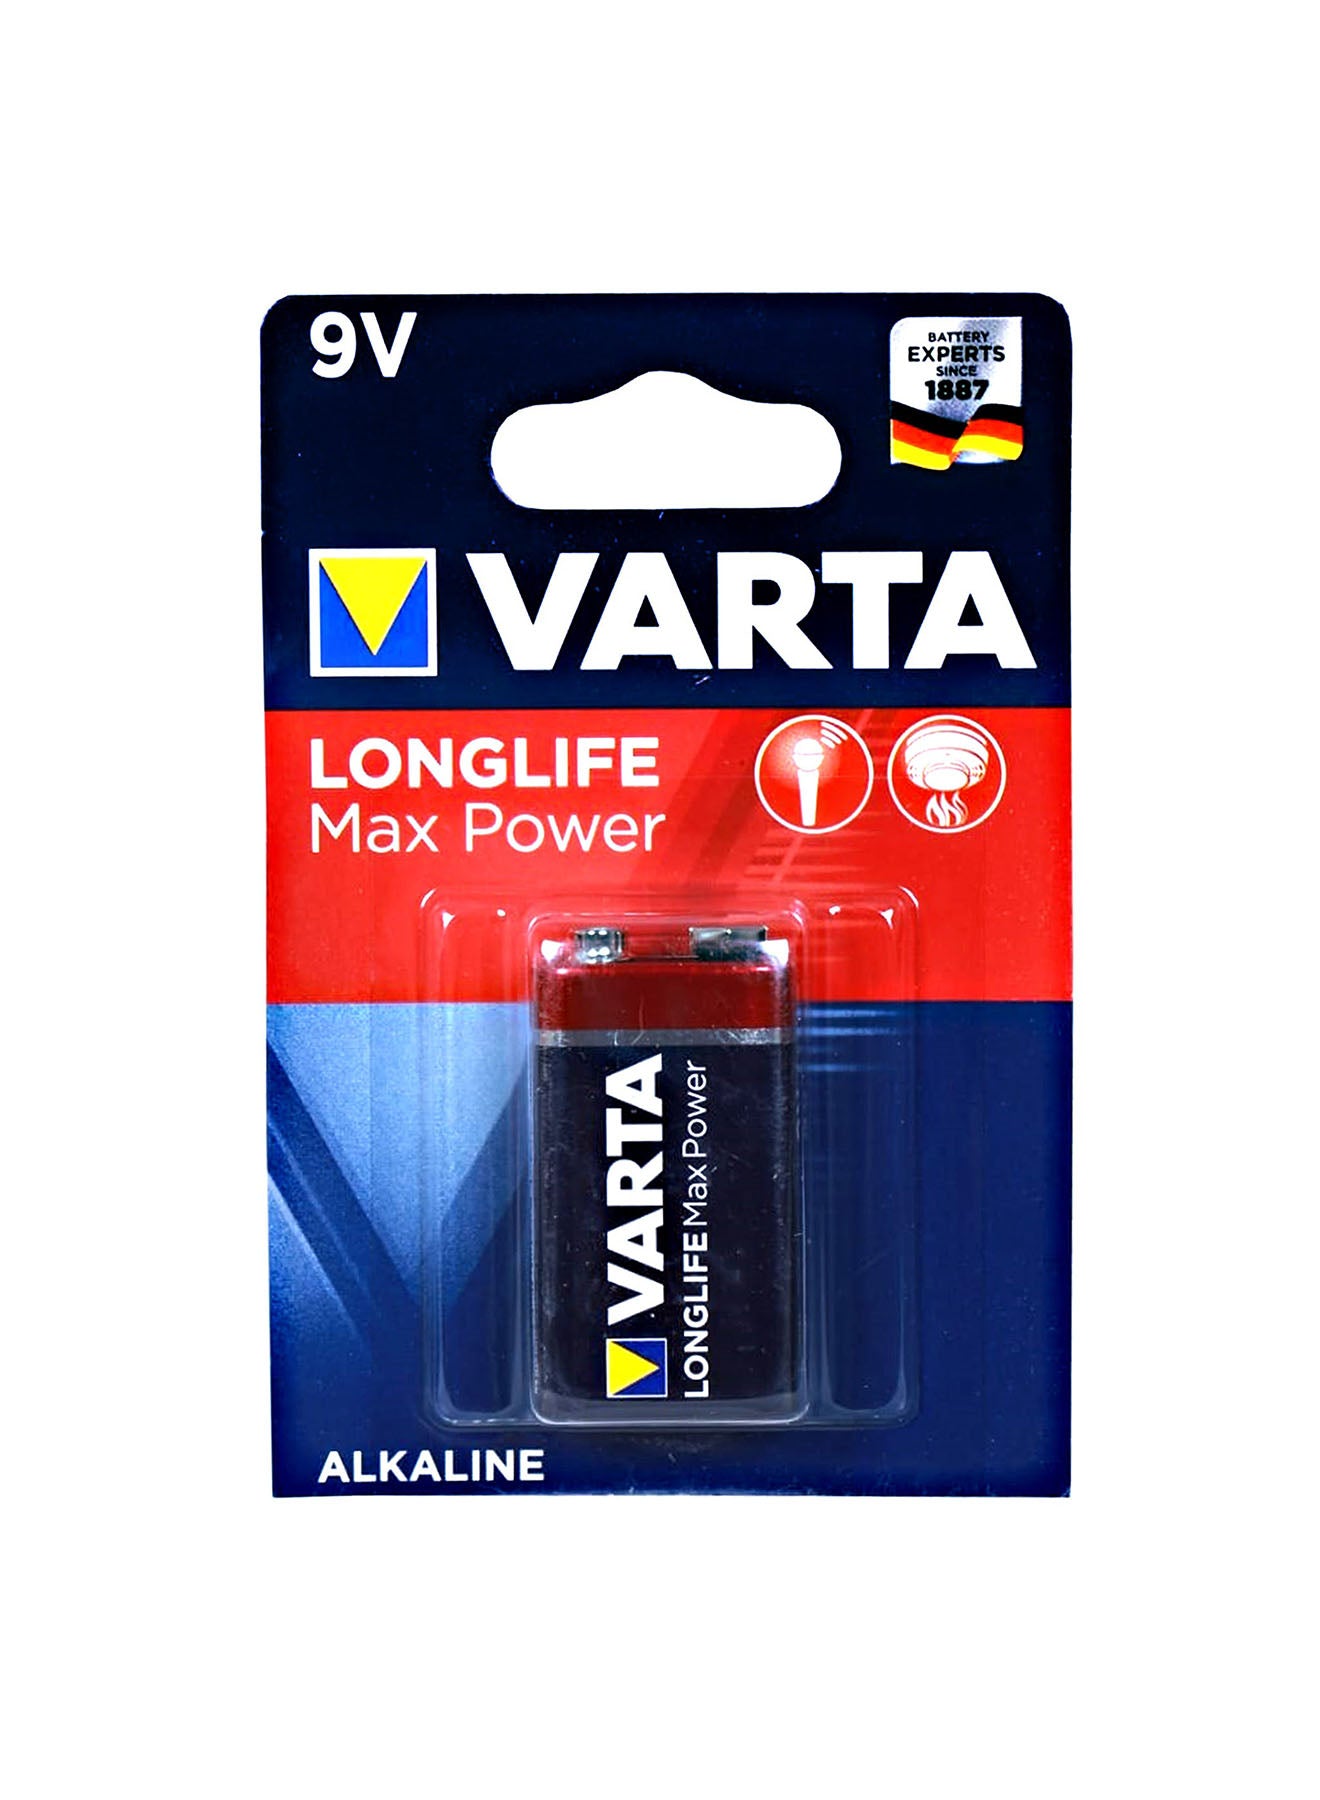 Varta Long Life Max Power 9V Alkaline Battery